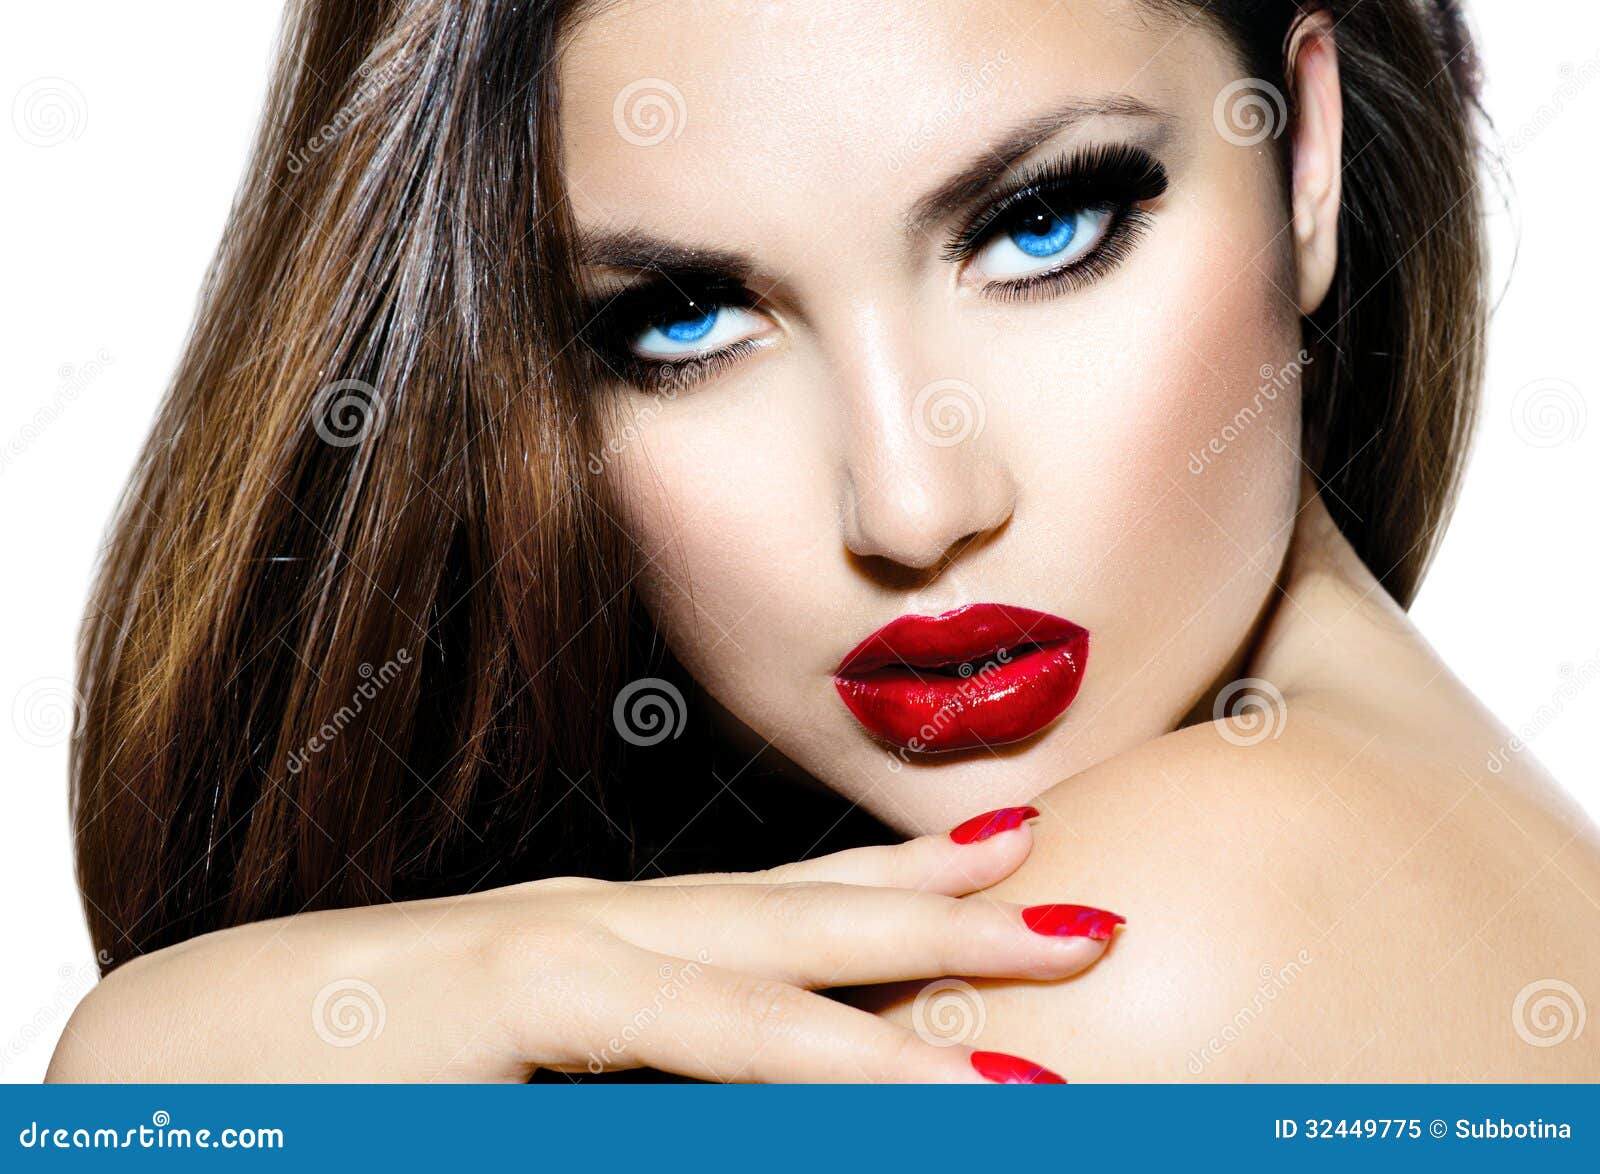 udobnost, izazov - Page 16 Sexy-beauty-girl-red-lips-nails-provocative-makeup-32449775